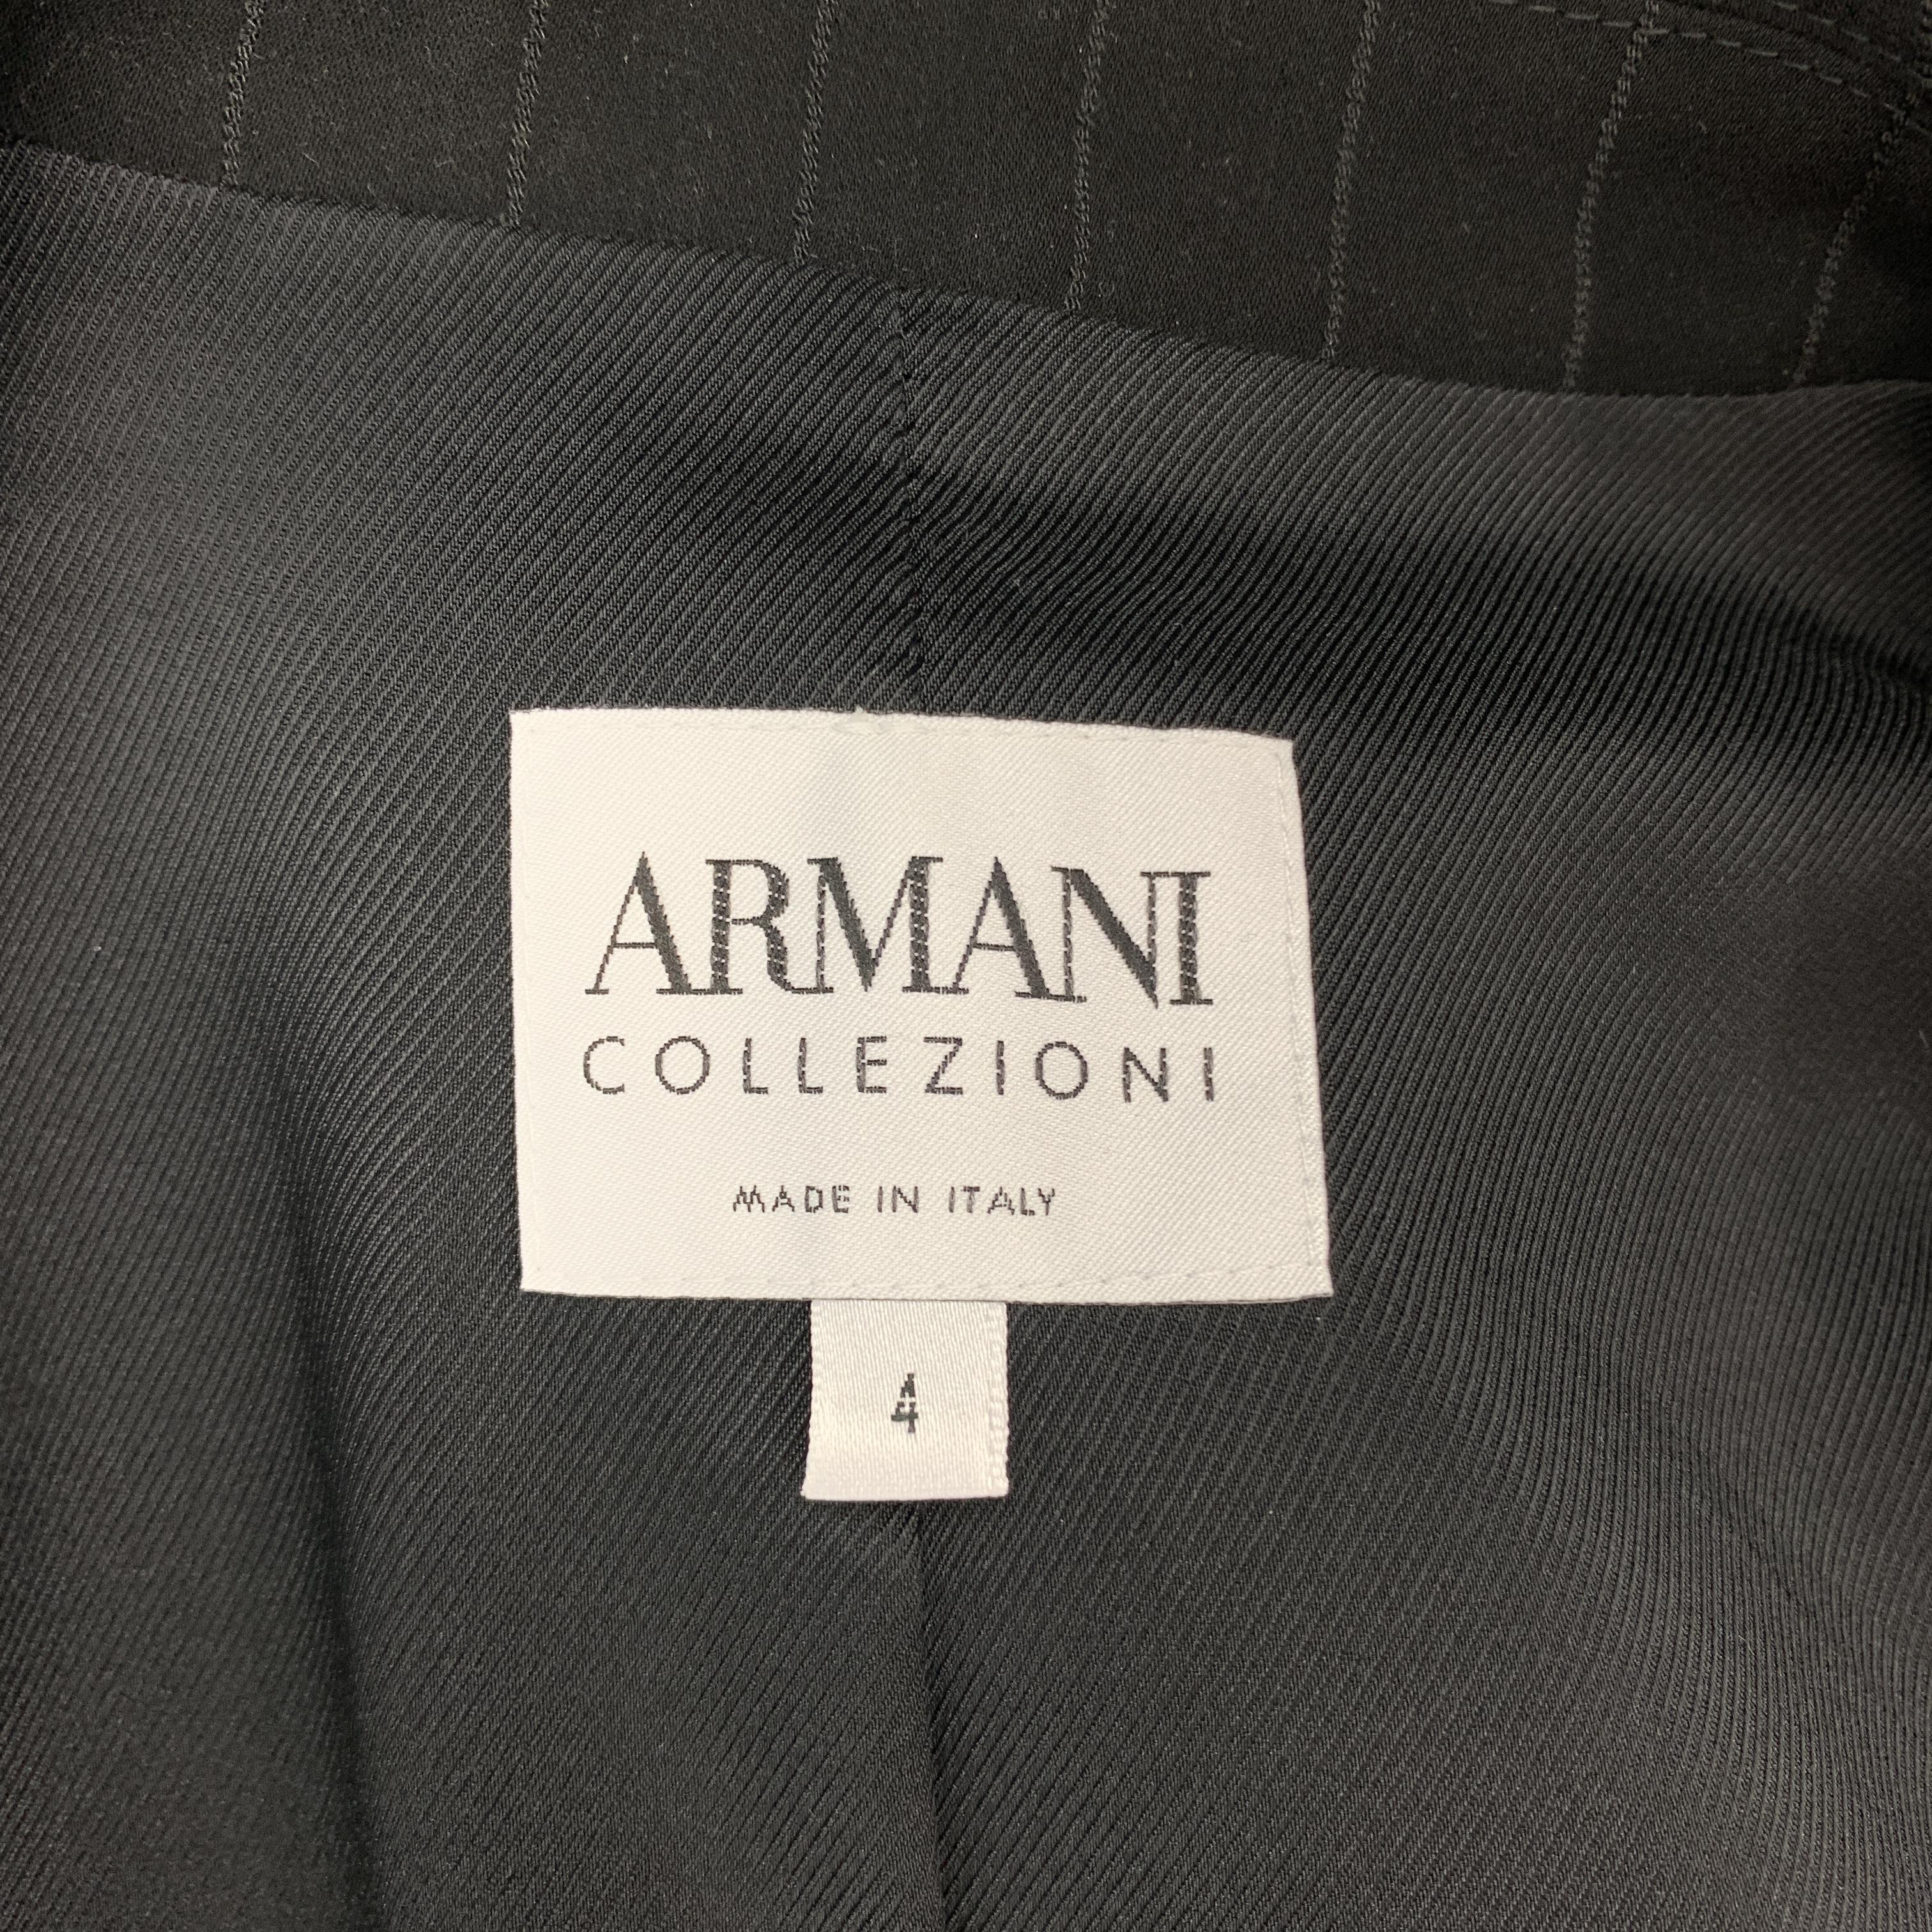 Women's ARMANI COLLEZIONI Size 4 Black Pinstriped Cropped Blazer Jacket